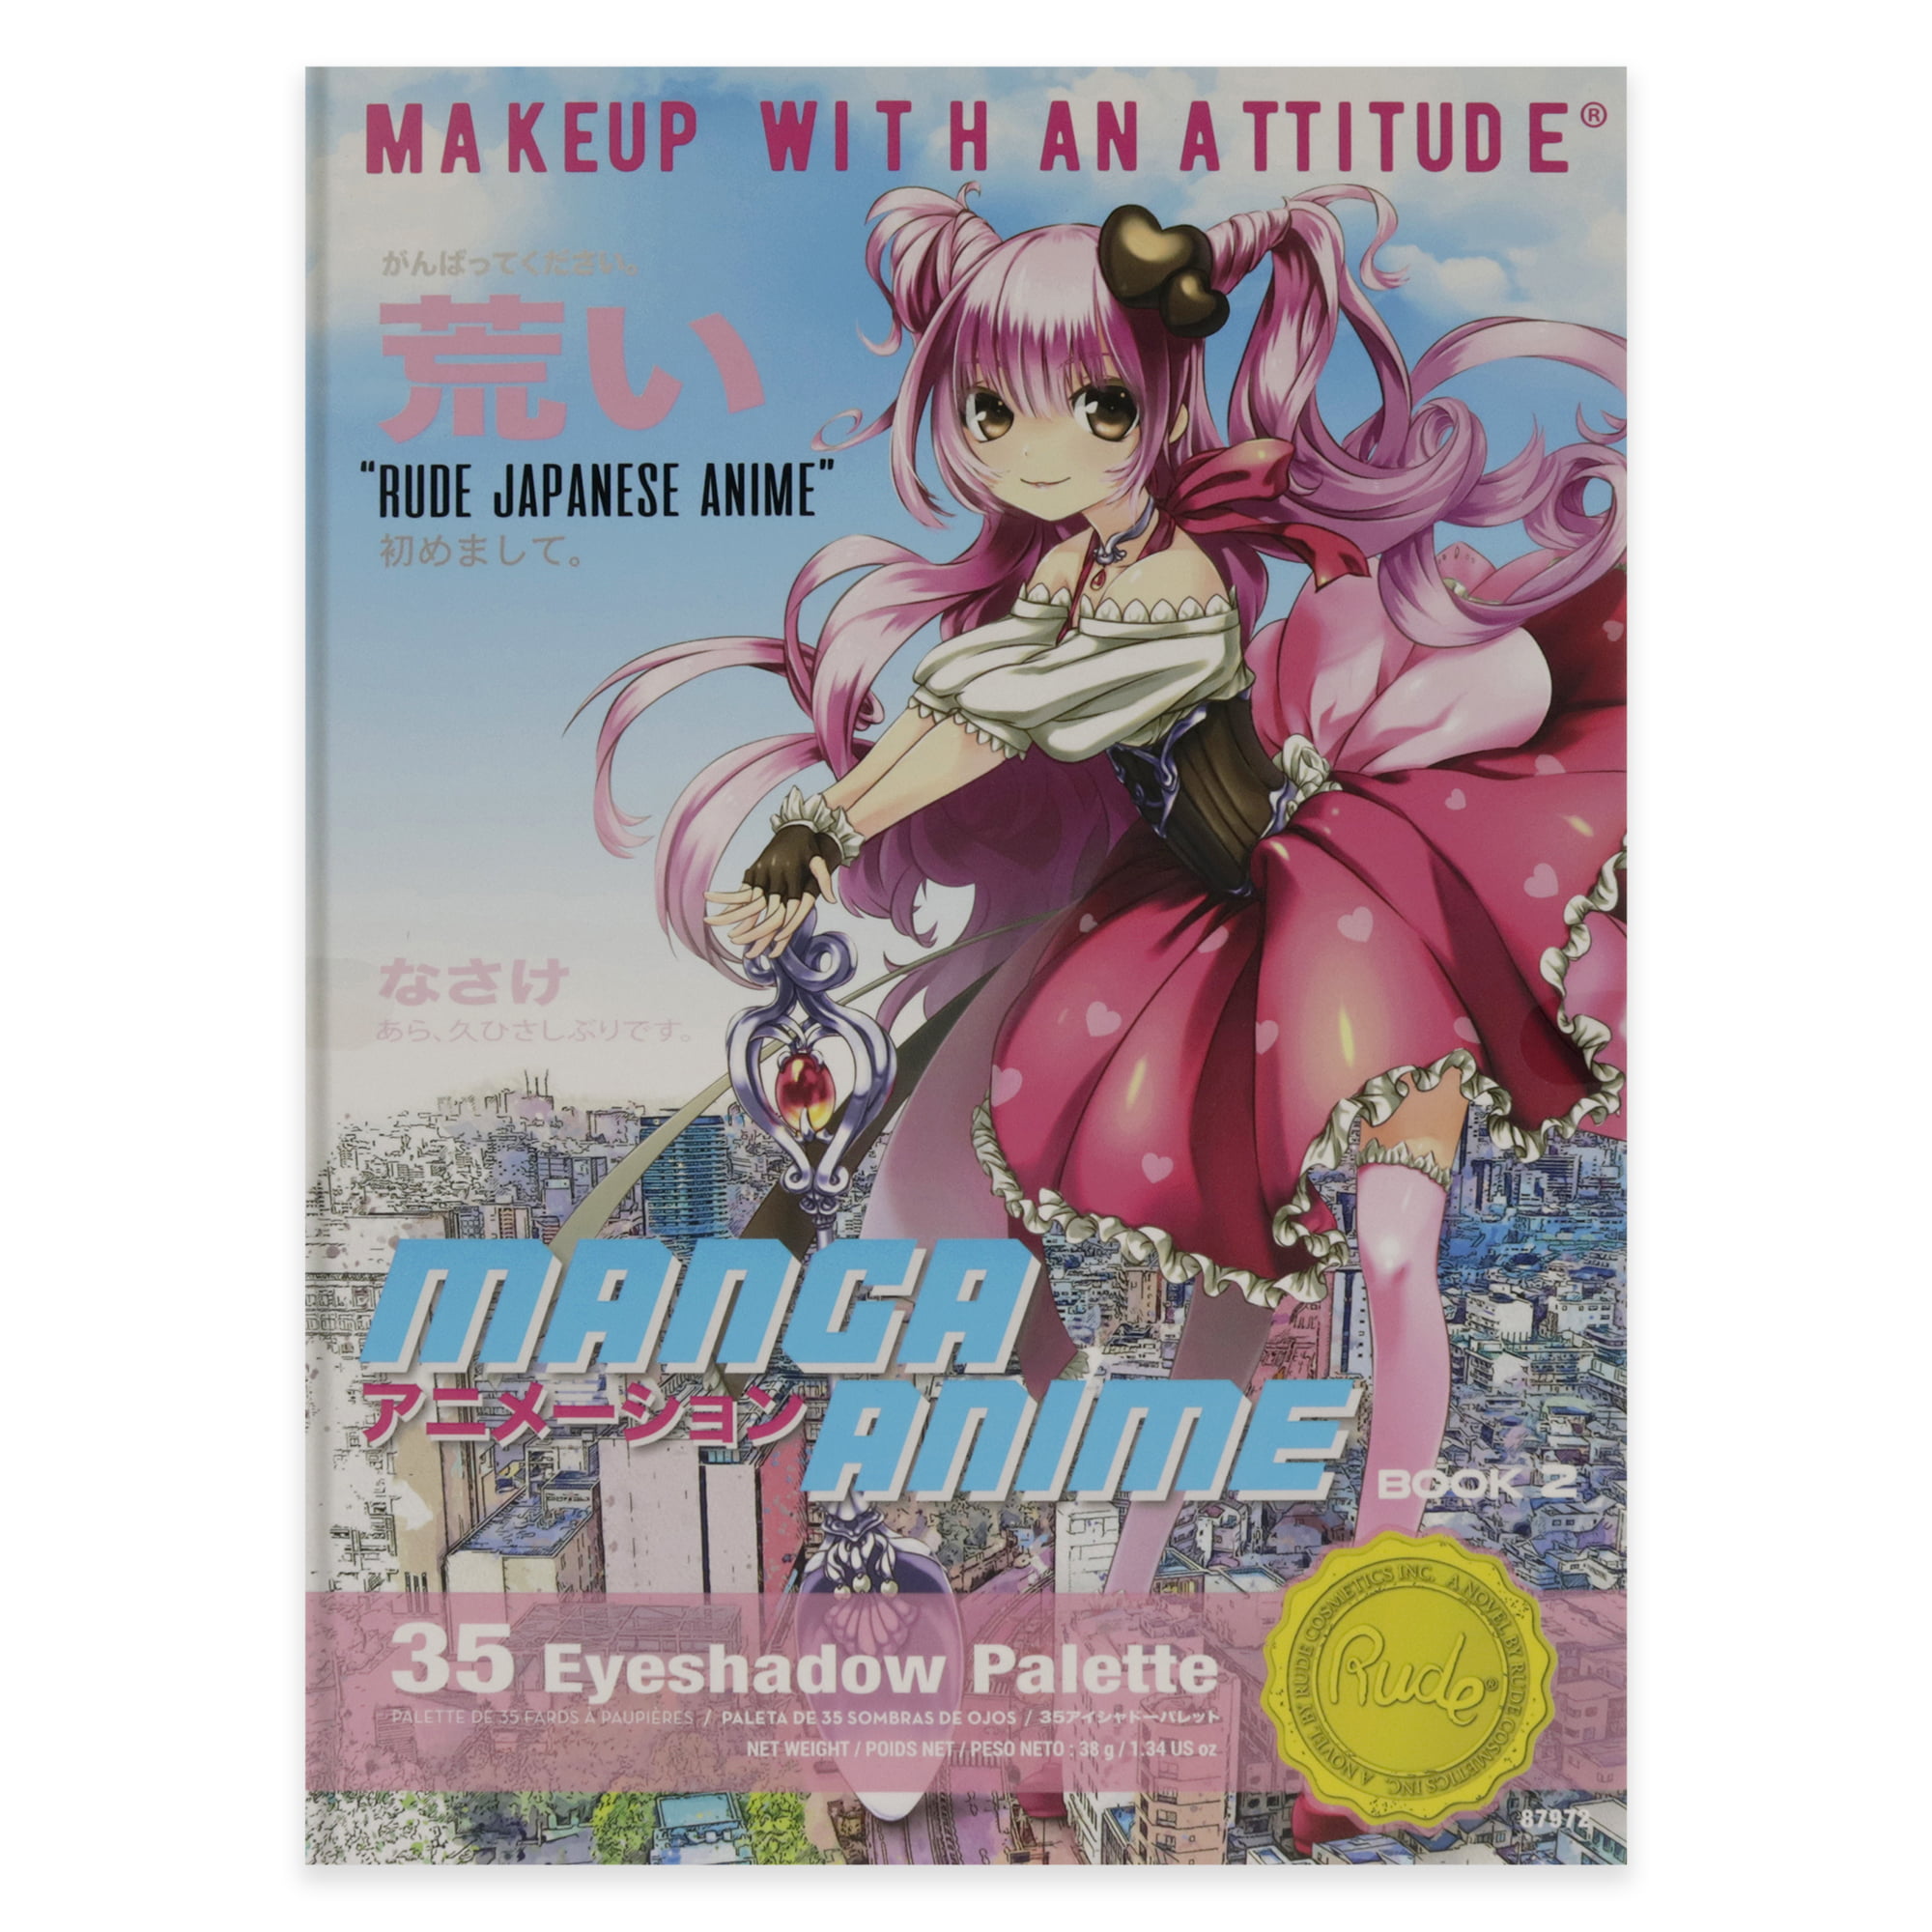 16 Anime Inspired Makeup Products  MyAnimeListnet